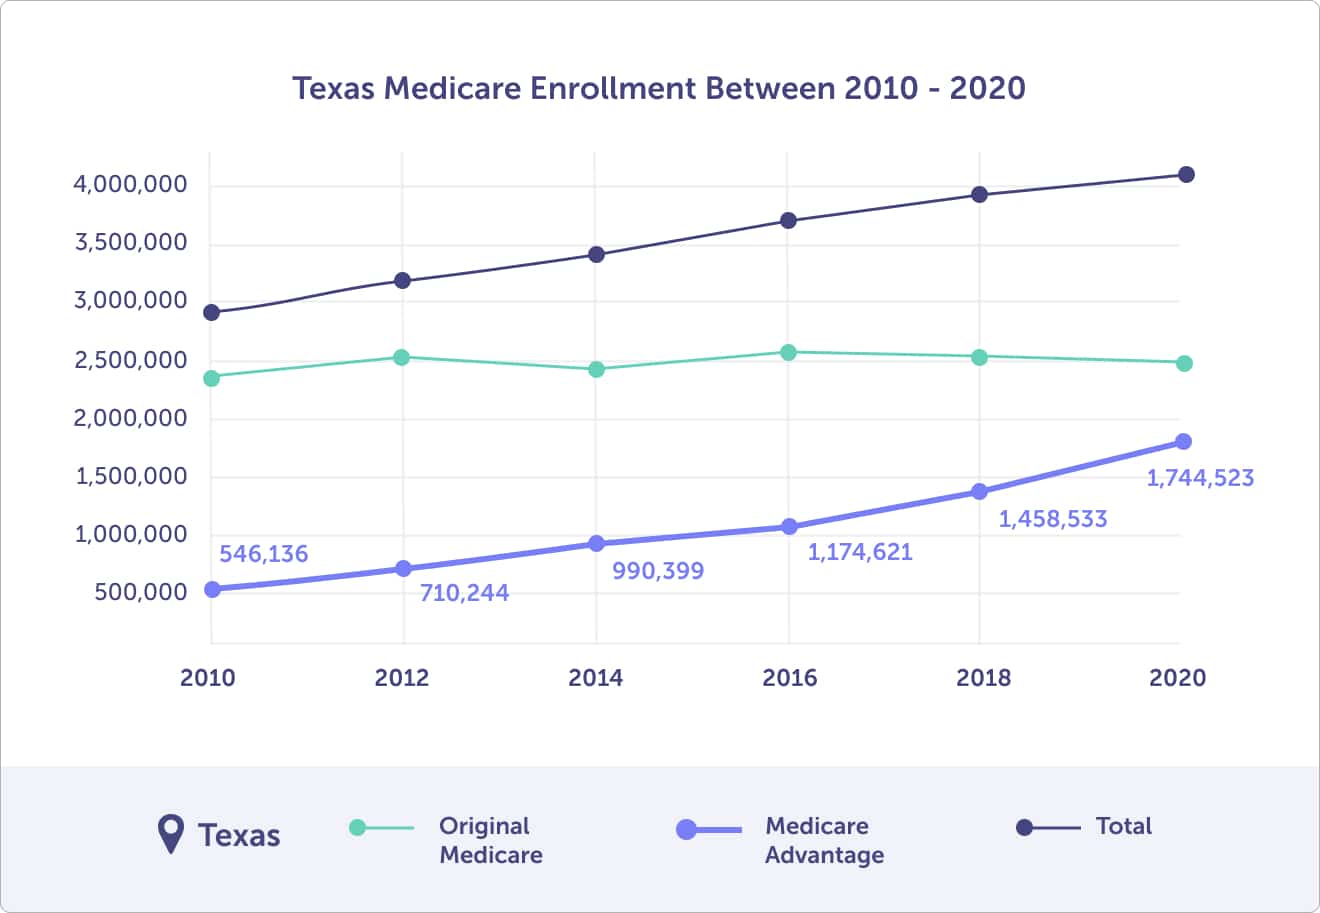 Texas Medicare enrollment between 2010 and 2020